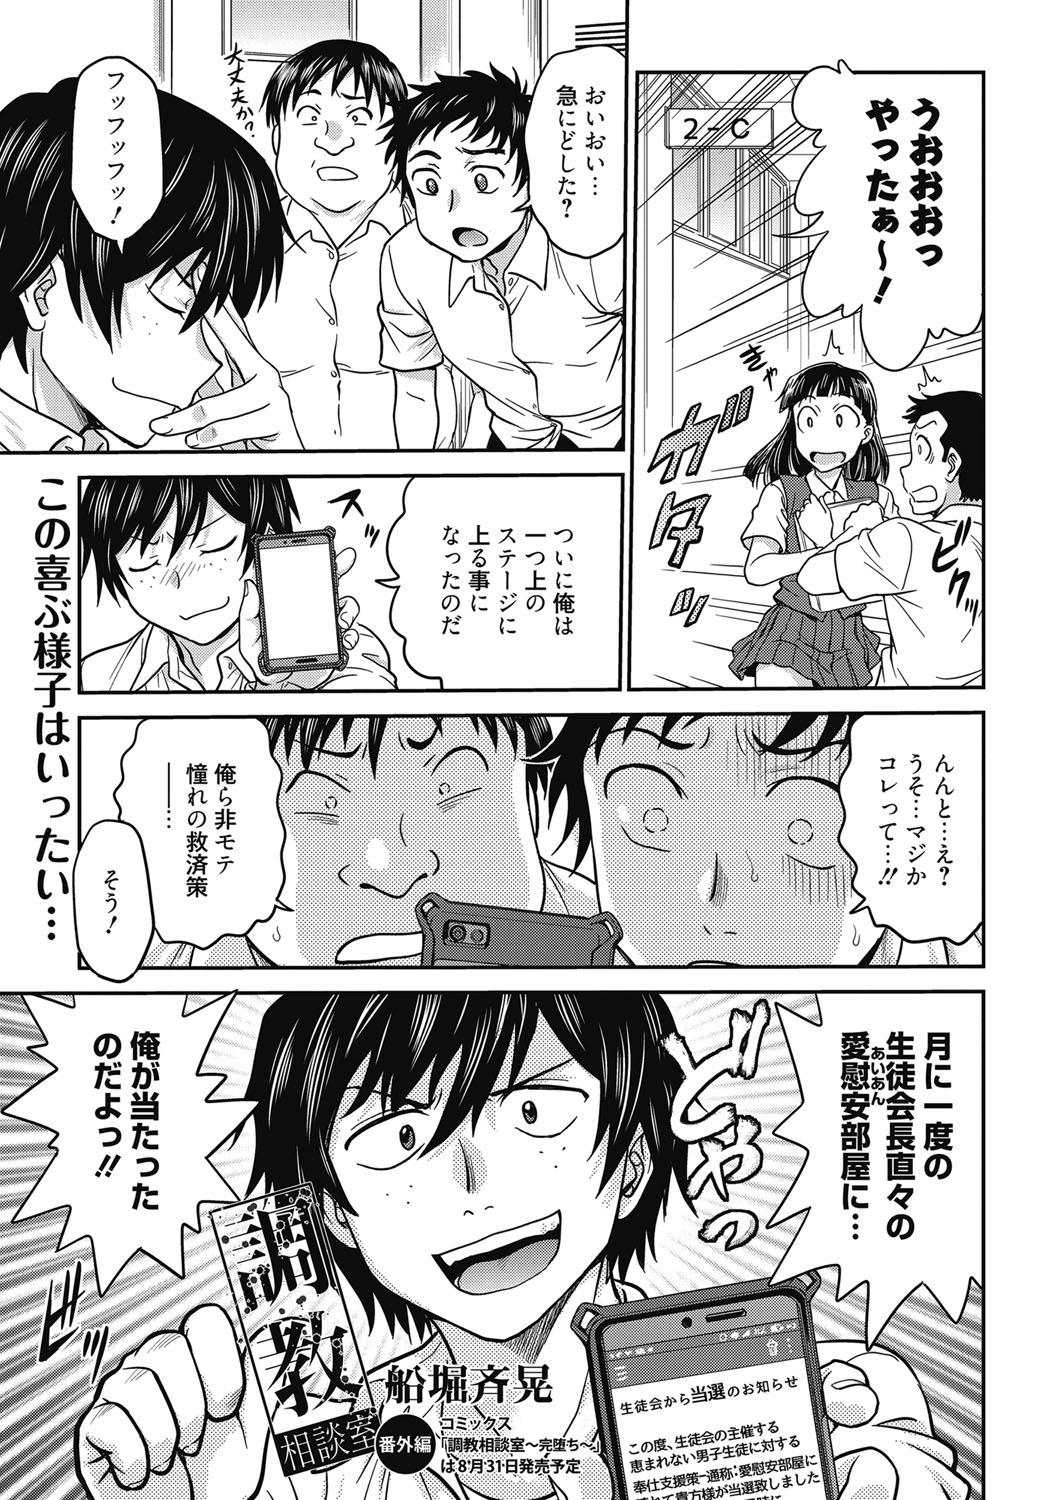 Safadinha Web Manga Bangaichi Vol. 24 Cheat - Page 4